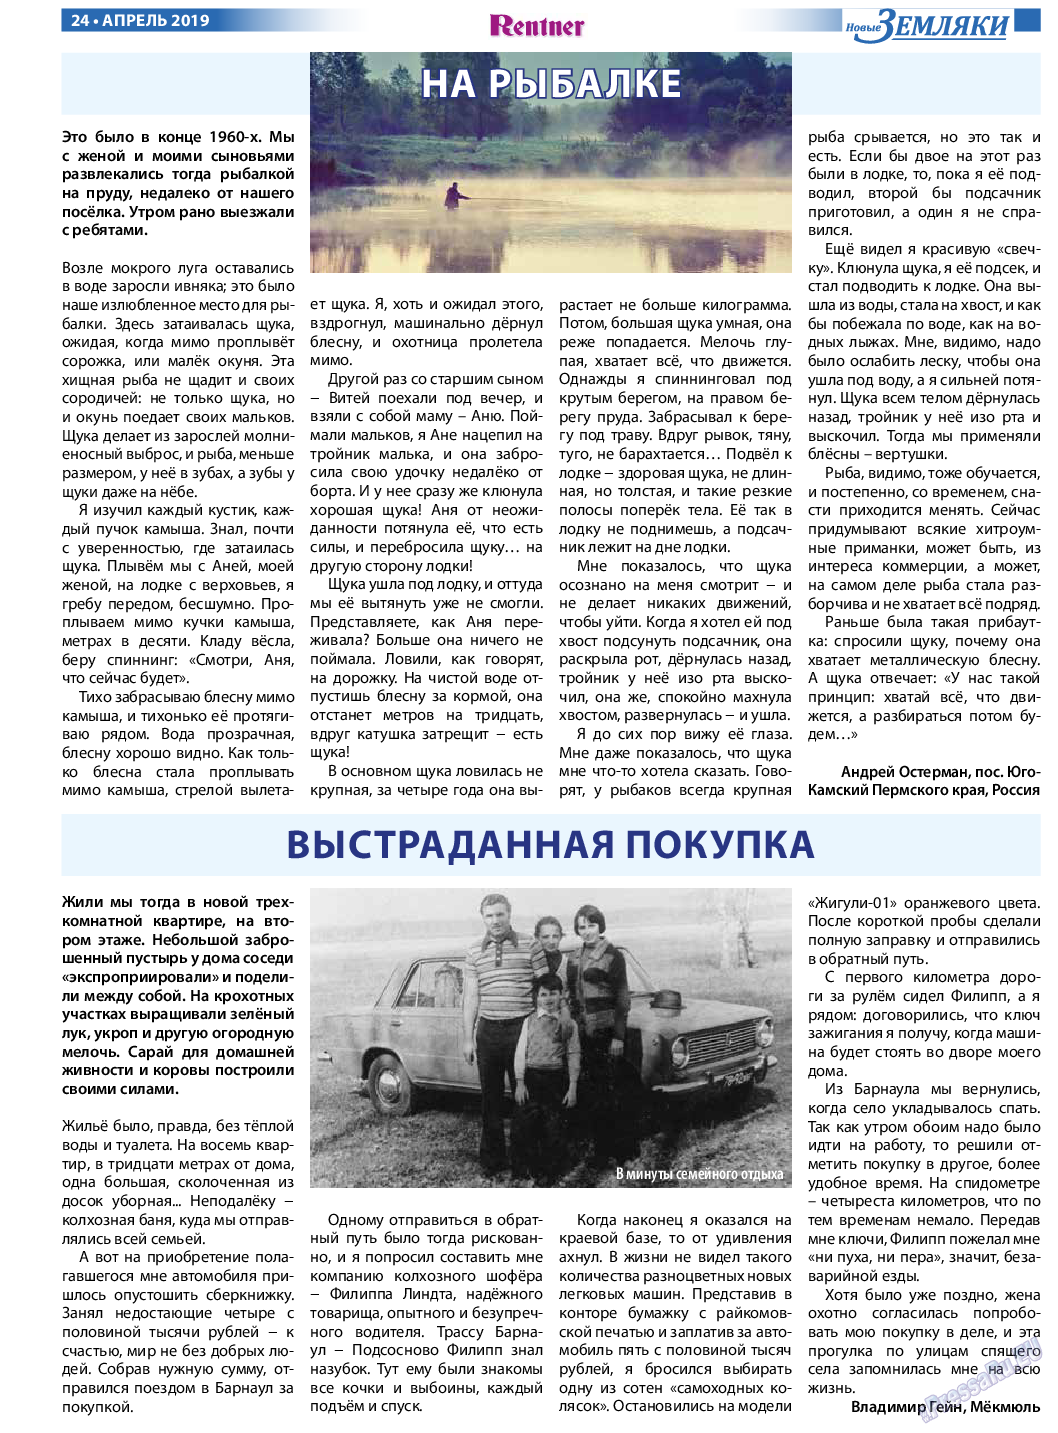 Новые Земляки, газета. 2019 №4 стр.24